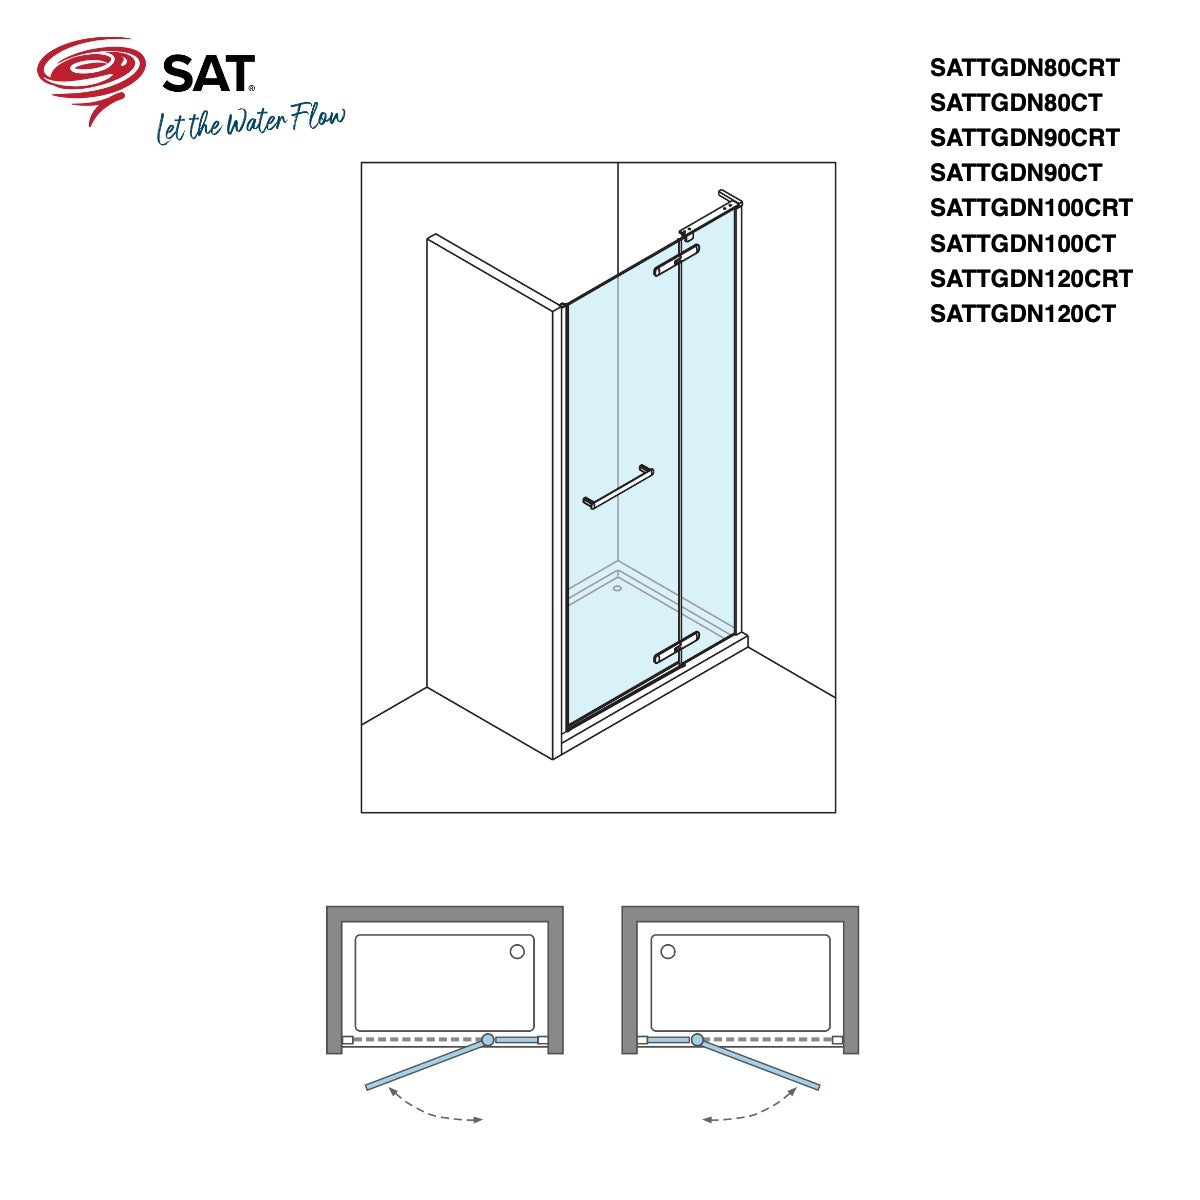 SATTGDN120CT SAT TGD NEW 120 cm tuš vrata brez okvirja črna